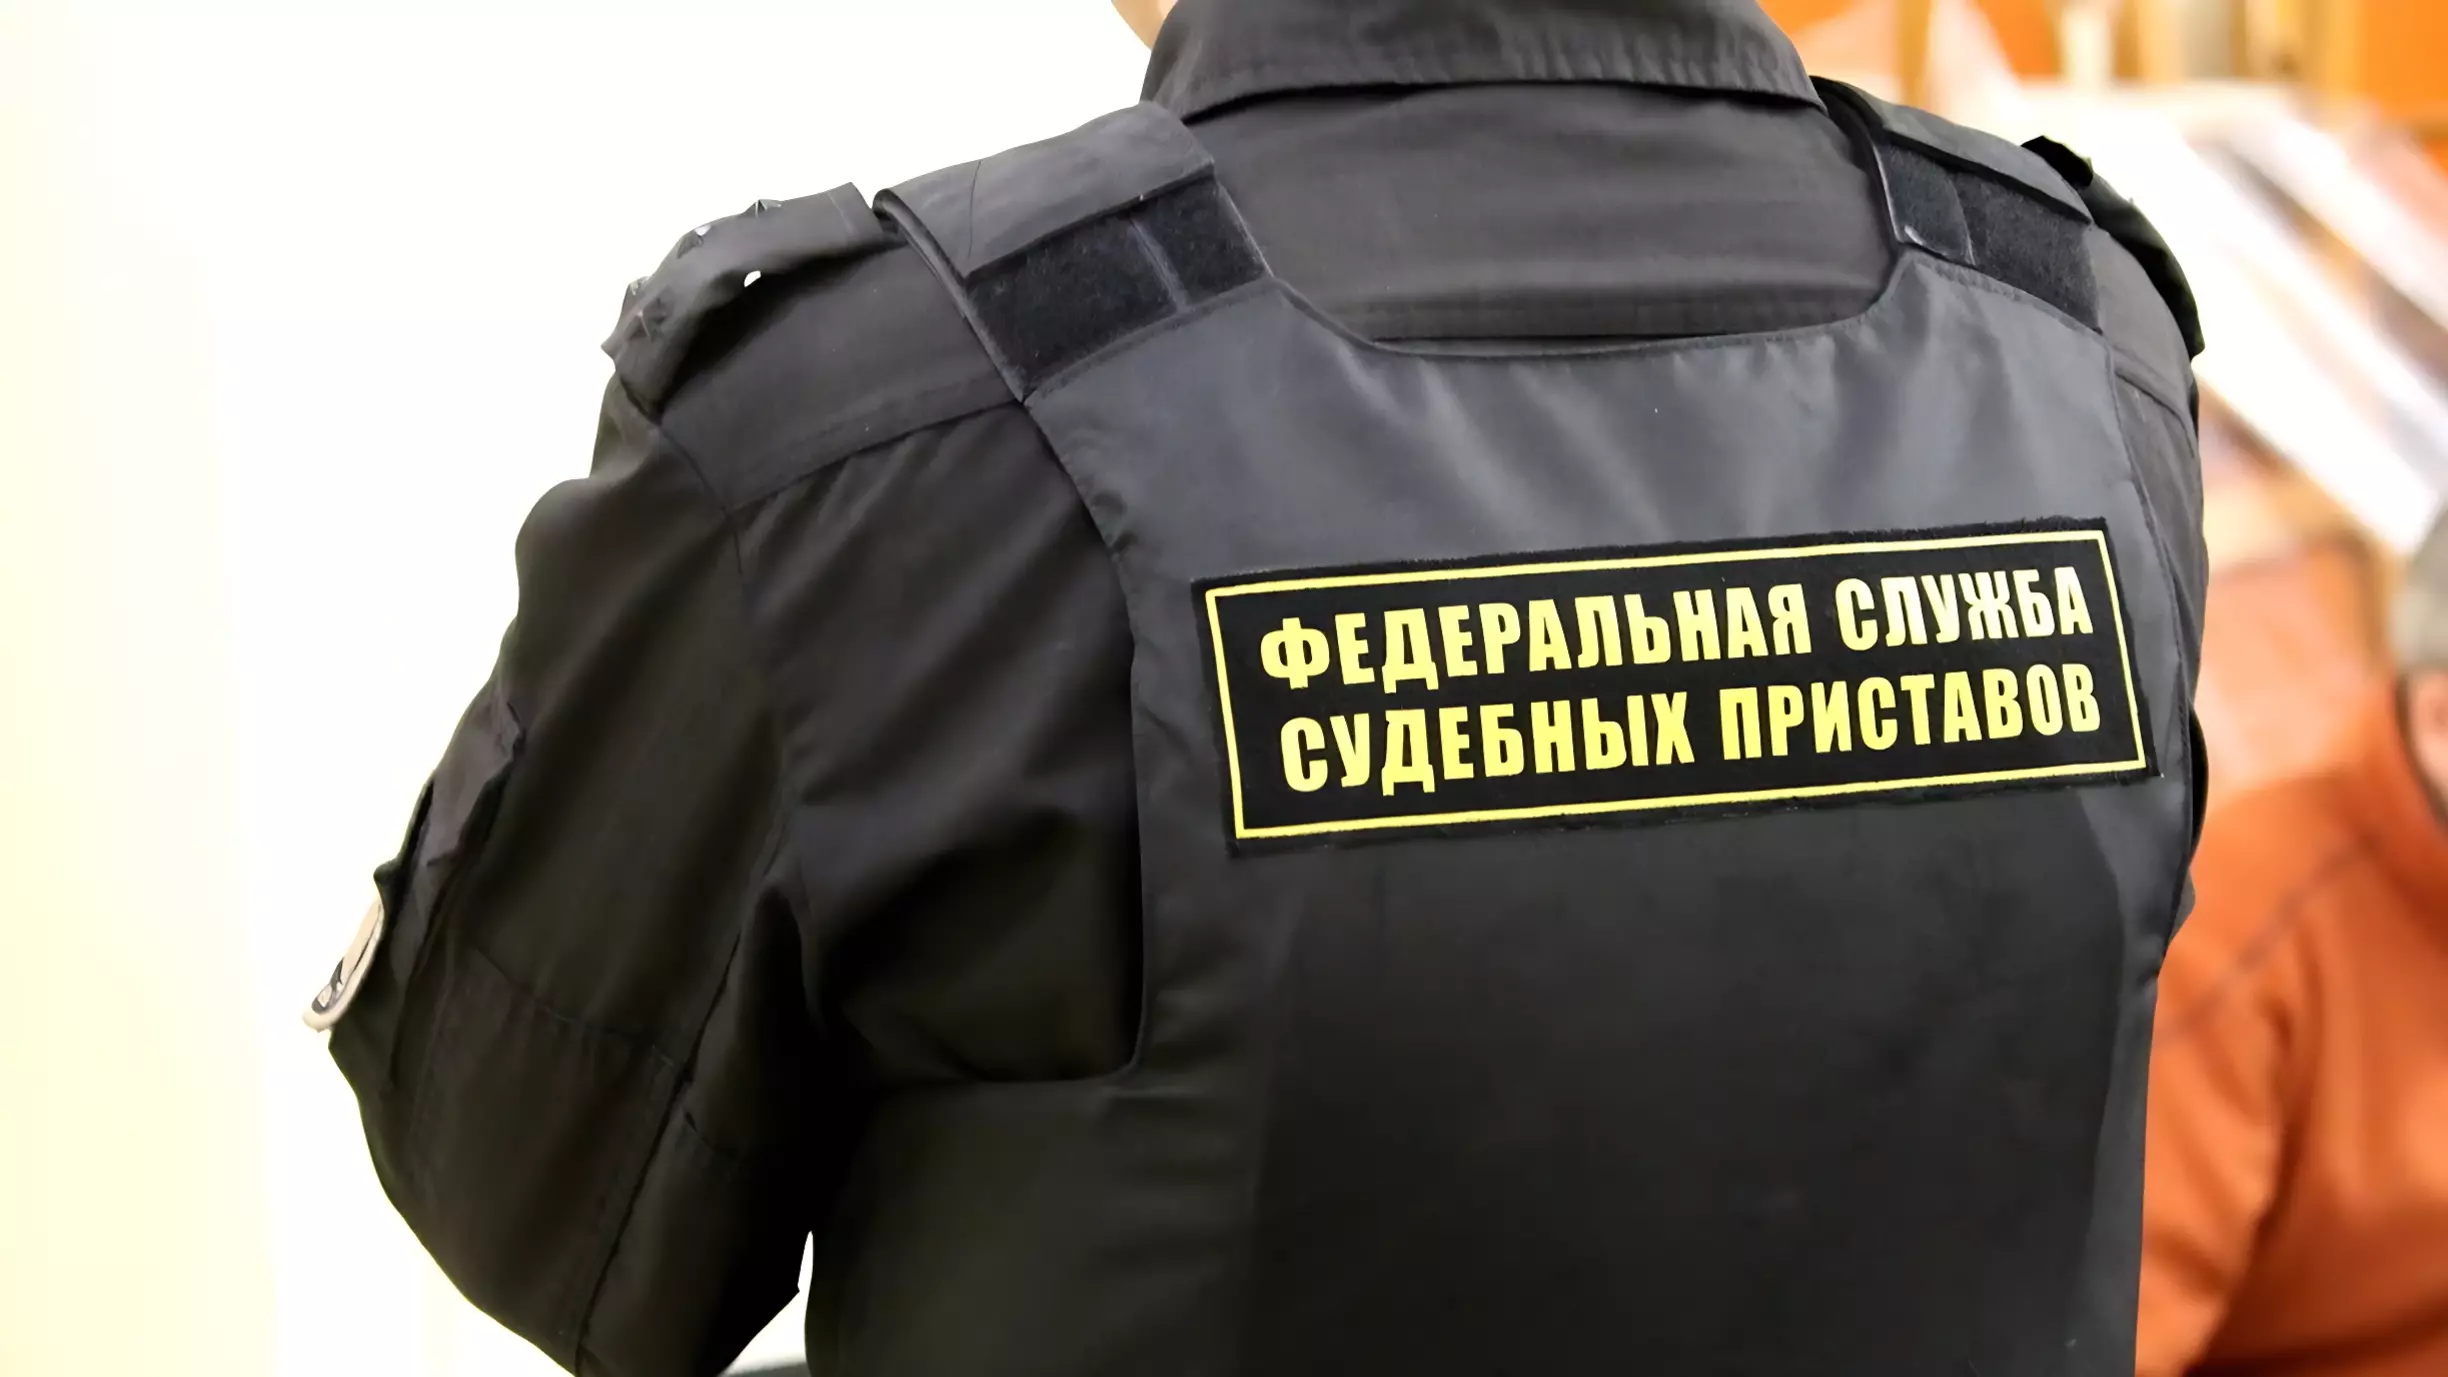 Риелтора-алиментщика в Перми приставы задержали, представившись покупателями квартиры